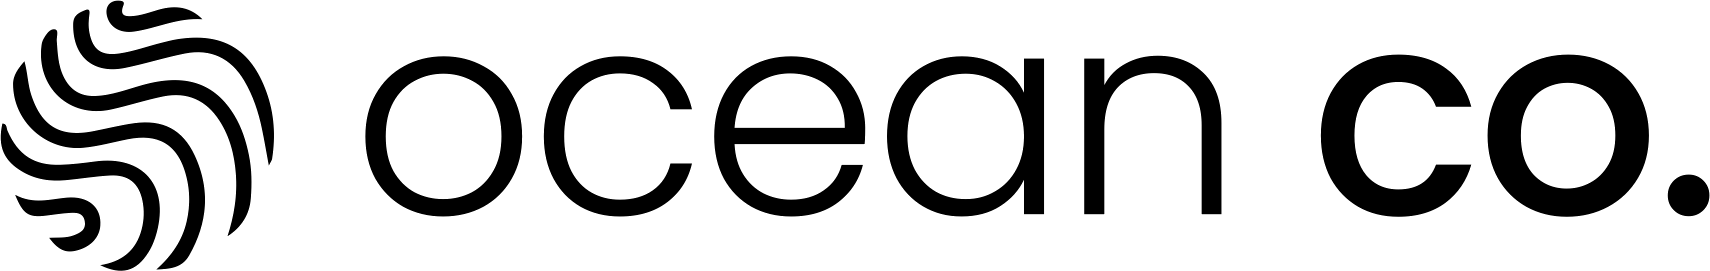 Ocean Co.logo image